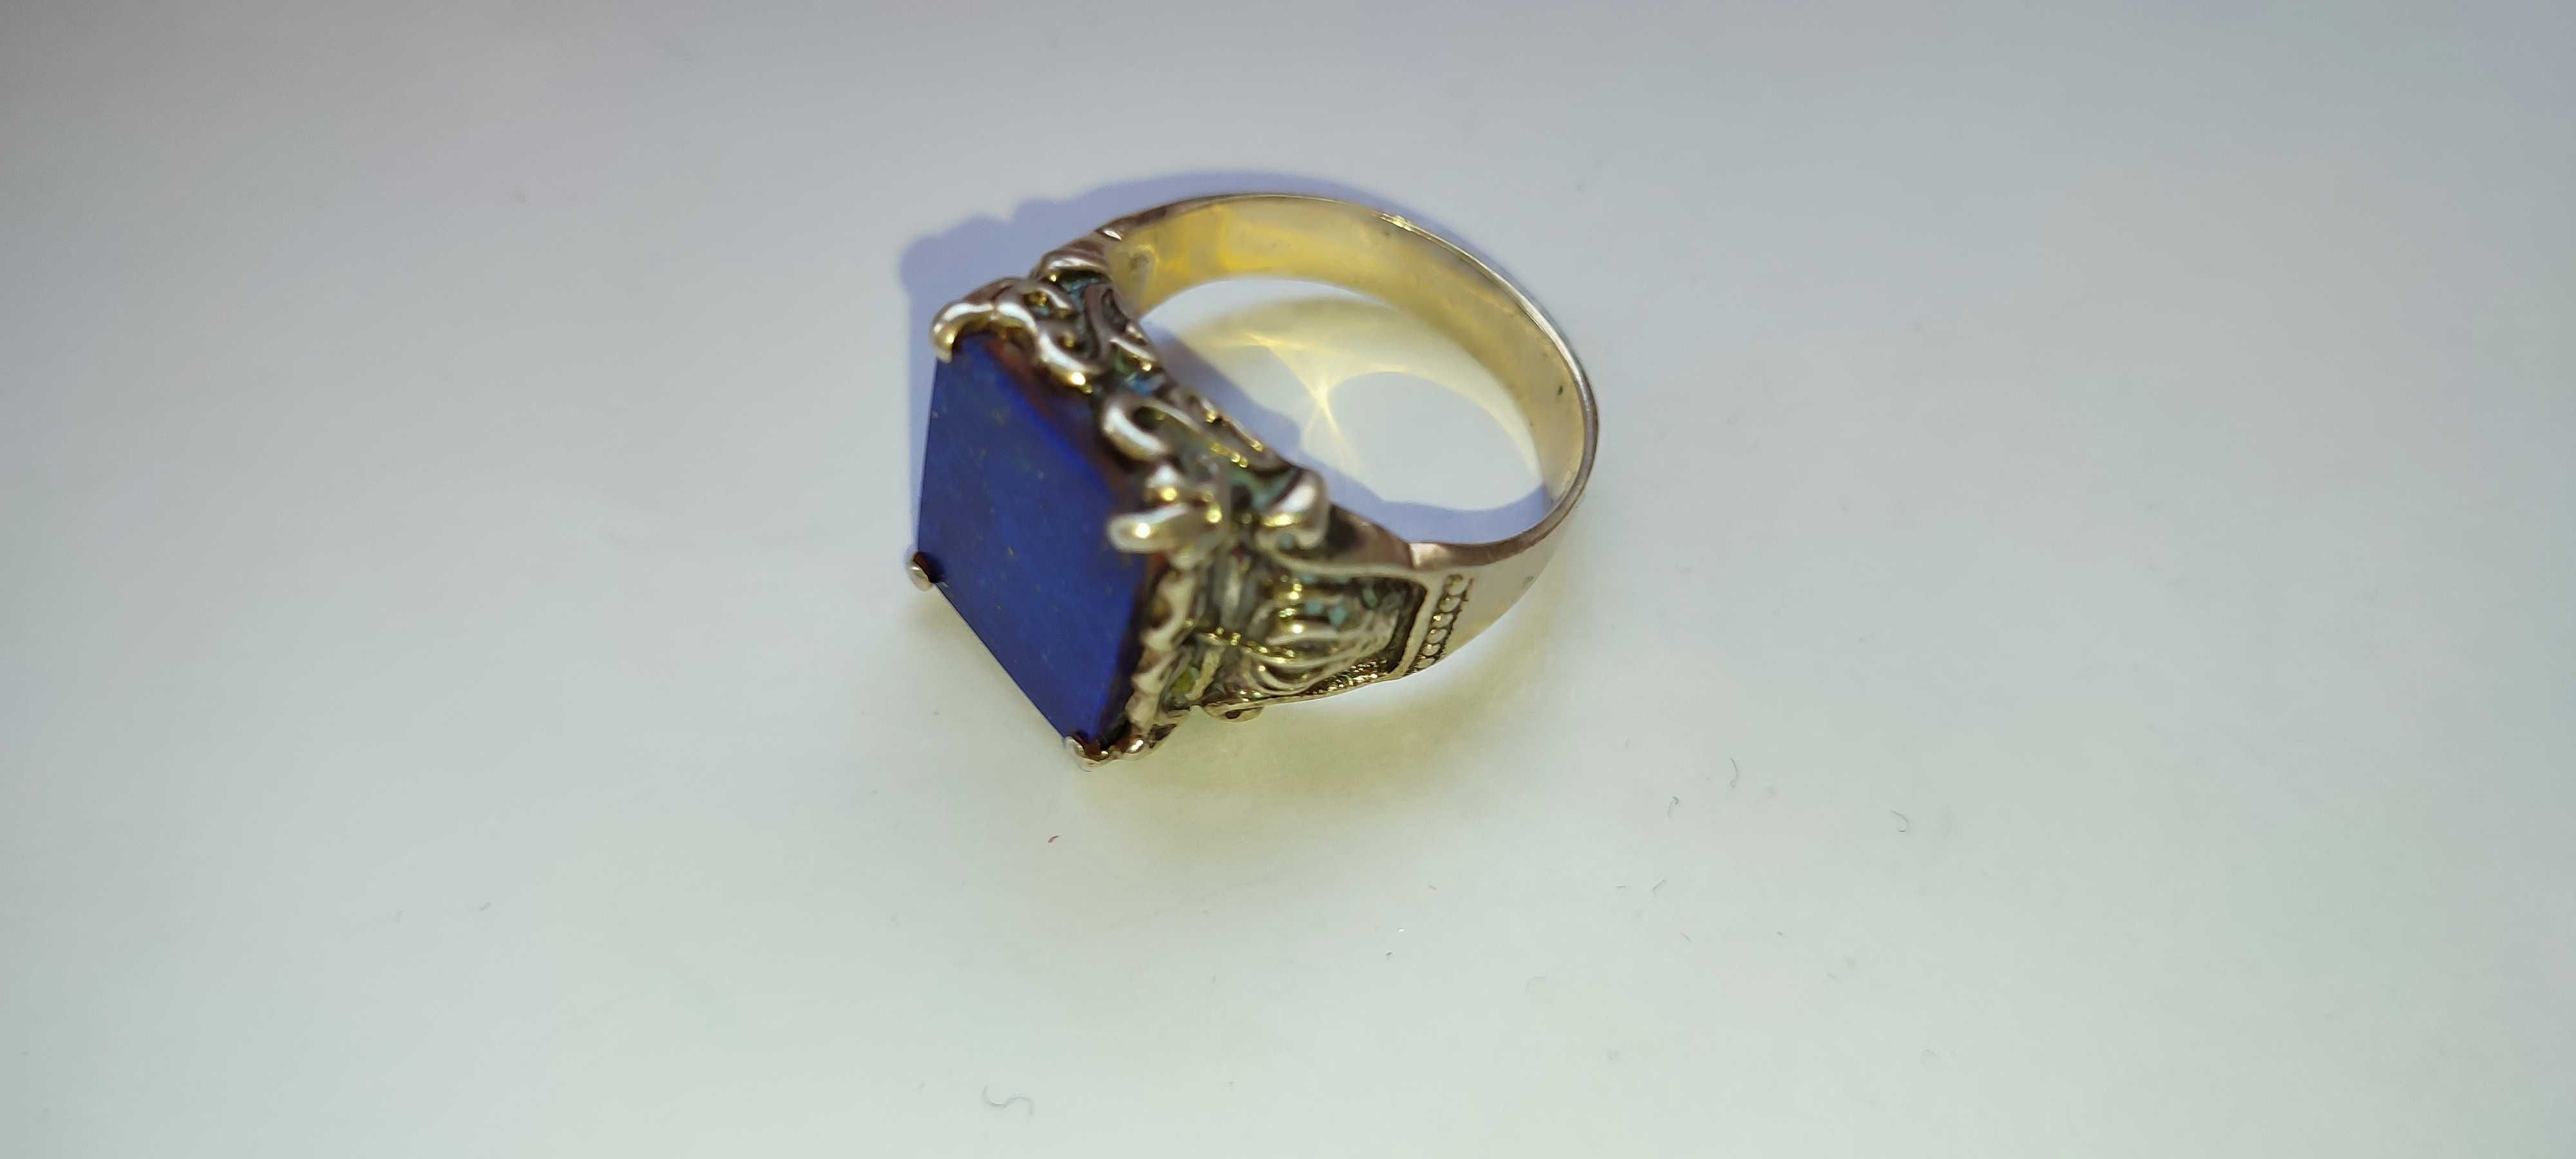 Шикарное серебряное кольцо с камнем ЛАЗУРИТ